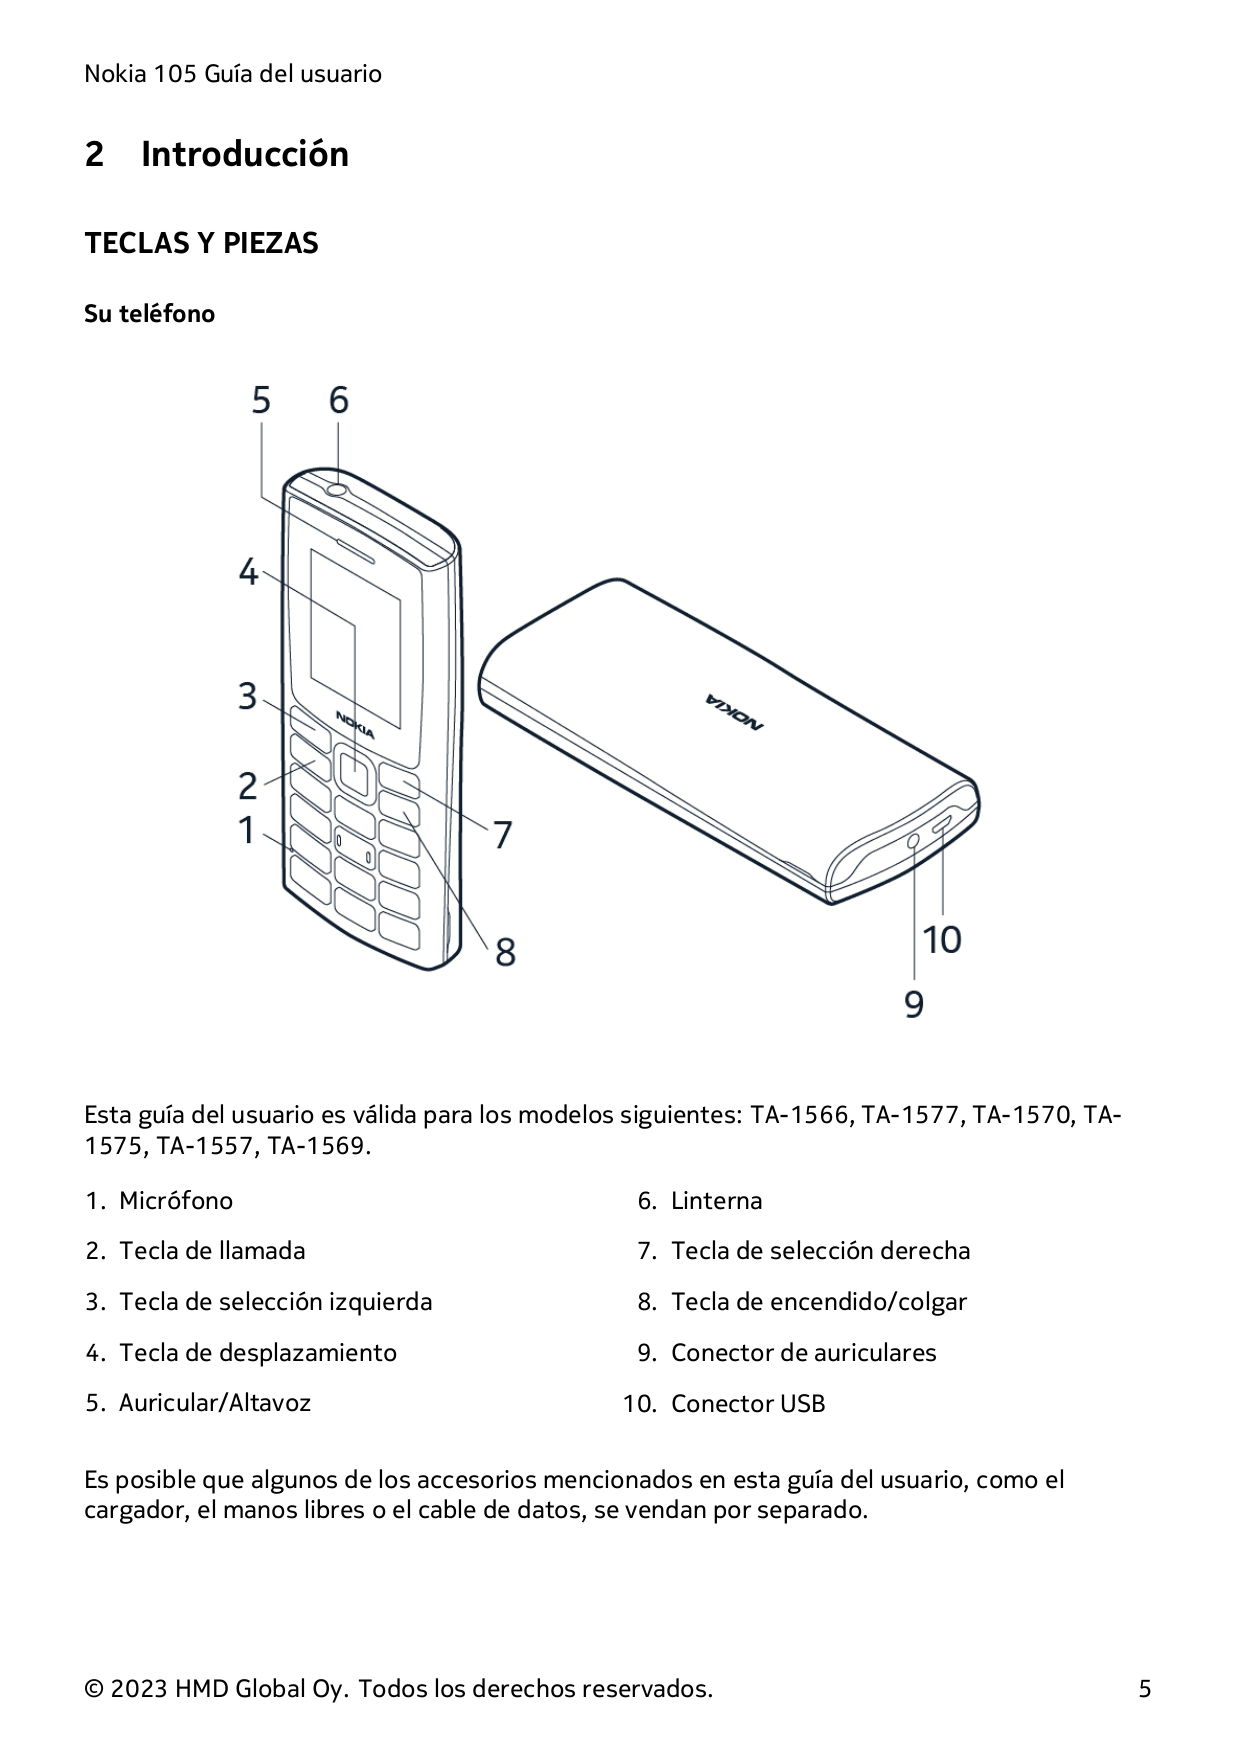 Nokia 105 Guía del usuario2IntroducciónTECLAS Y PIEZASSu teléfonoEsta guía del usuario es válida para los modelos siguientes: TA